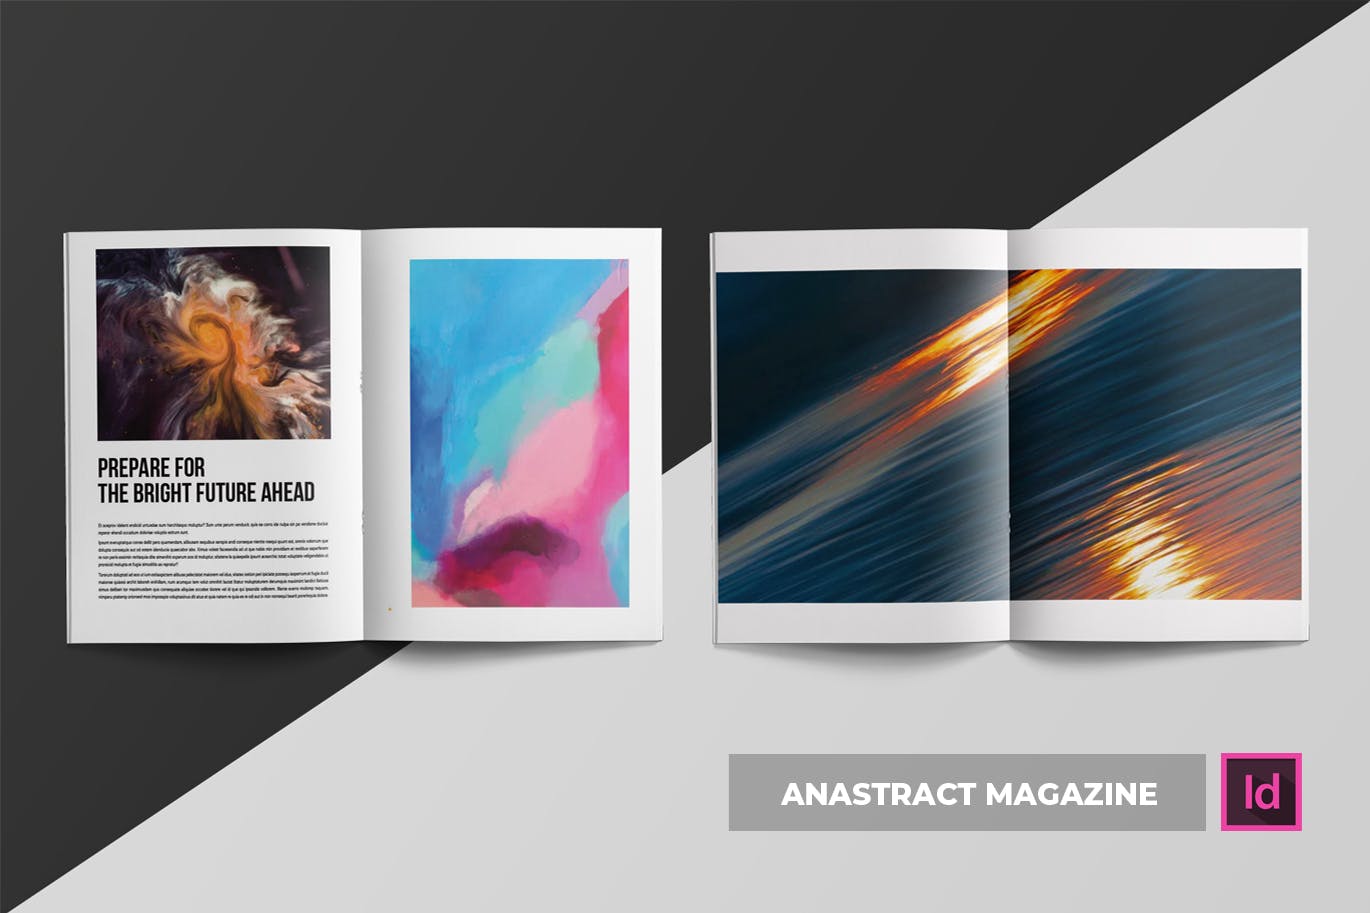 简约企业杂志版式设计模板 Anastract | Magazine Template插图(2)